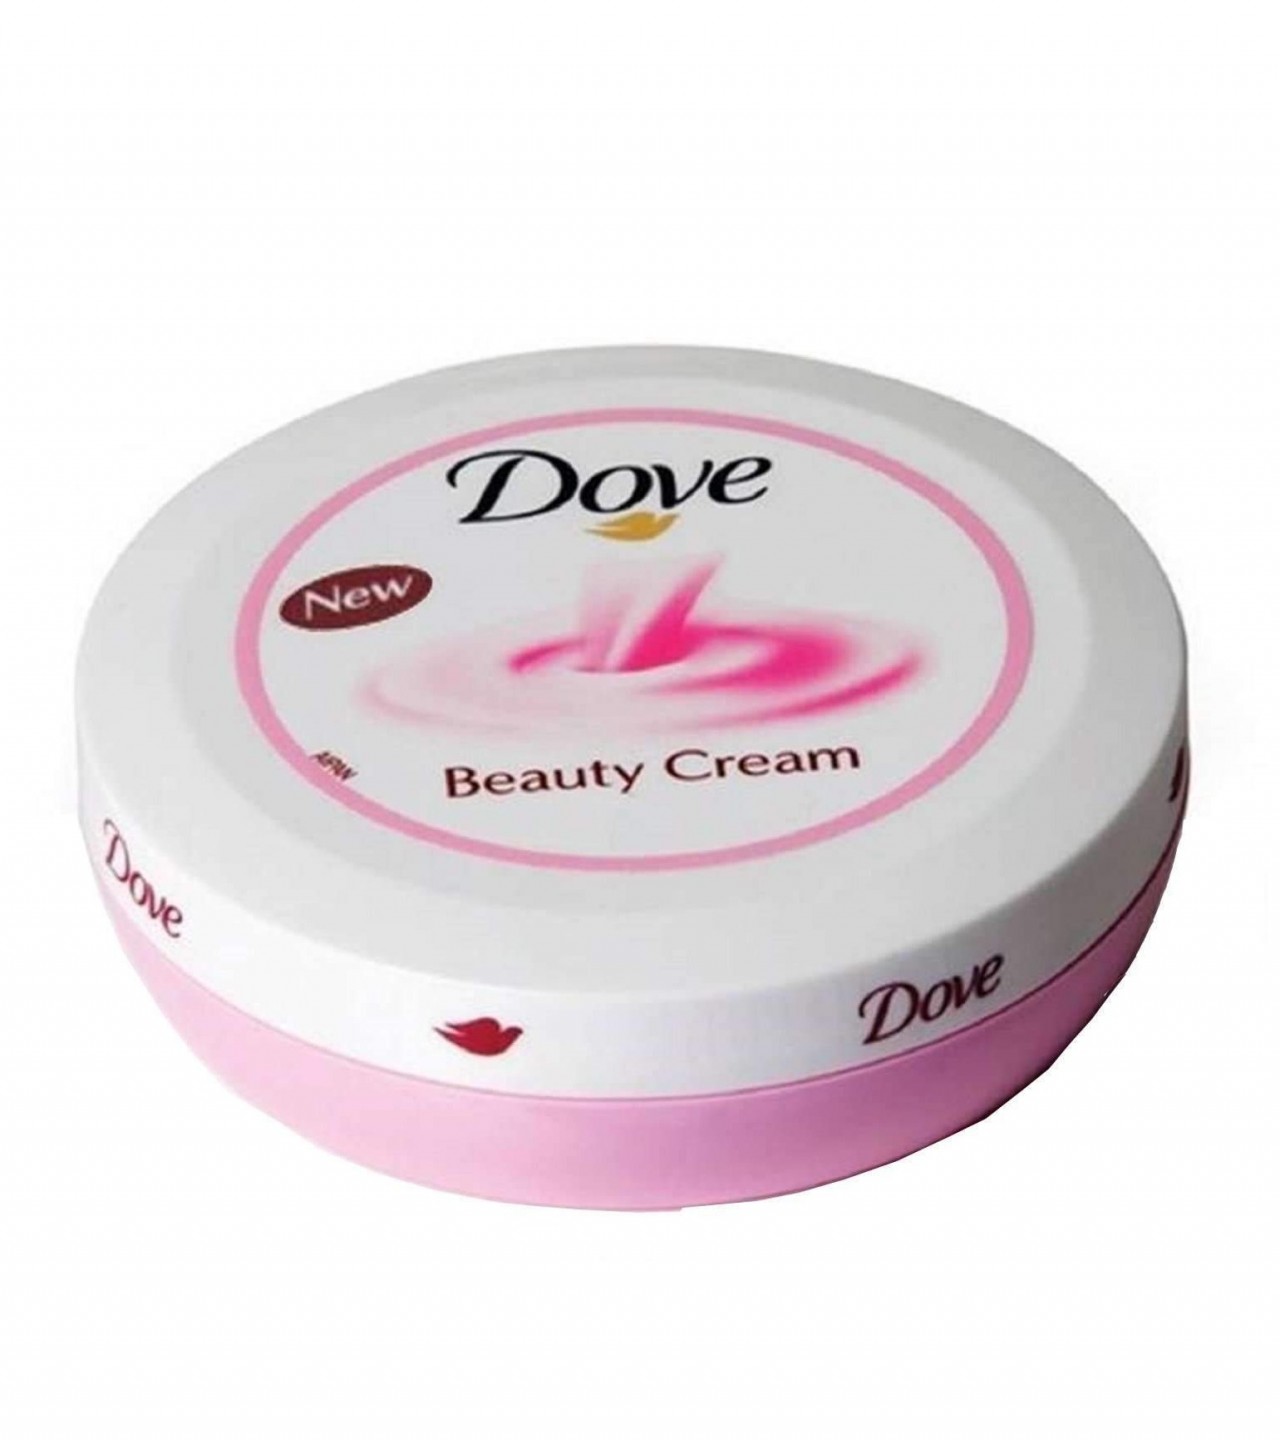 Beauty Cream Dove